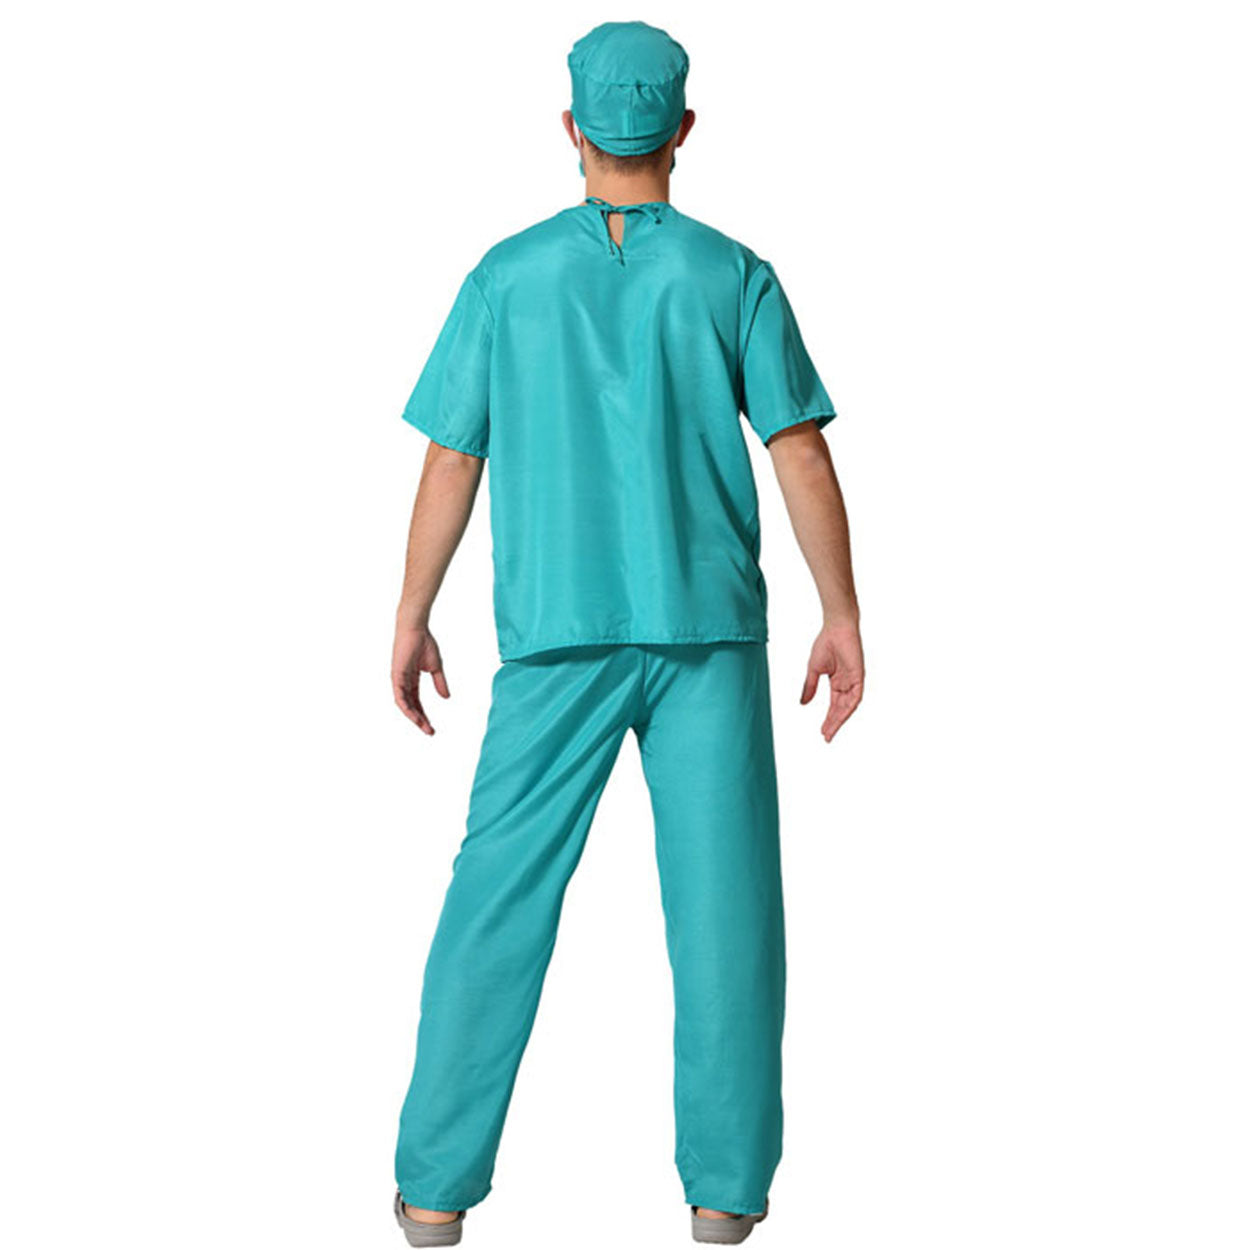 Costume Dottoressa Chirurgo Tg 36/38